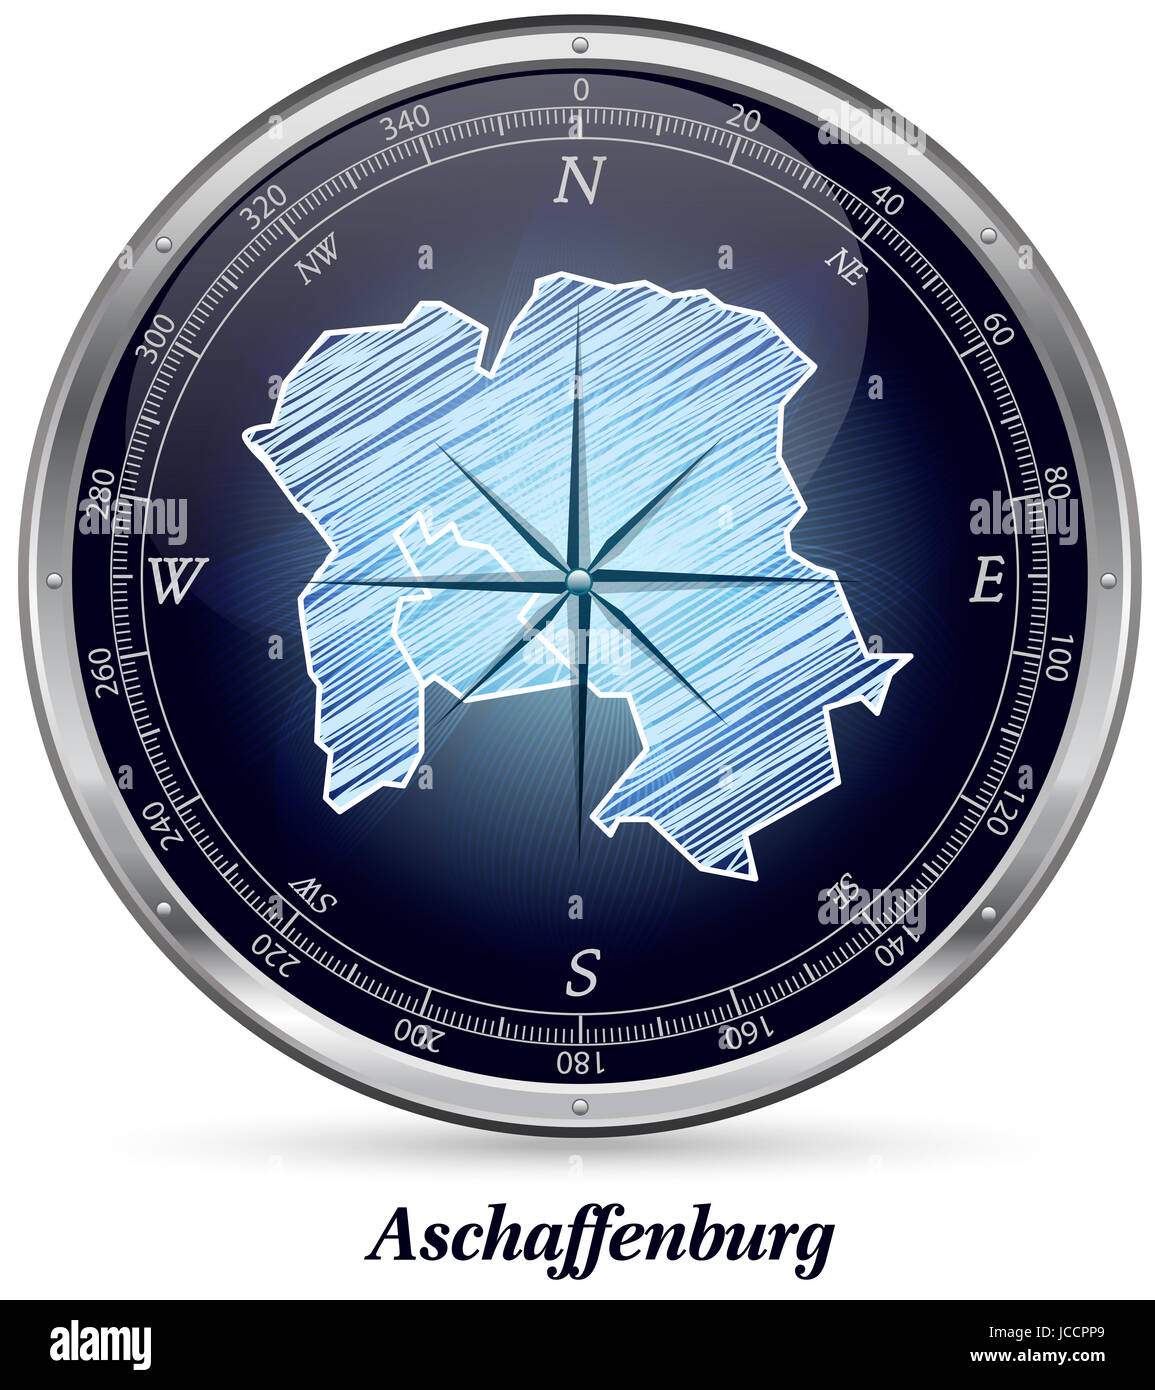 Aschaffenburg mit Grenzen in Chrom Stock Photo